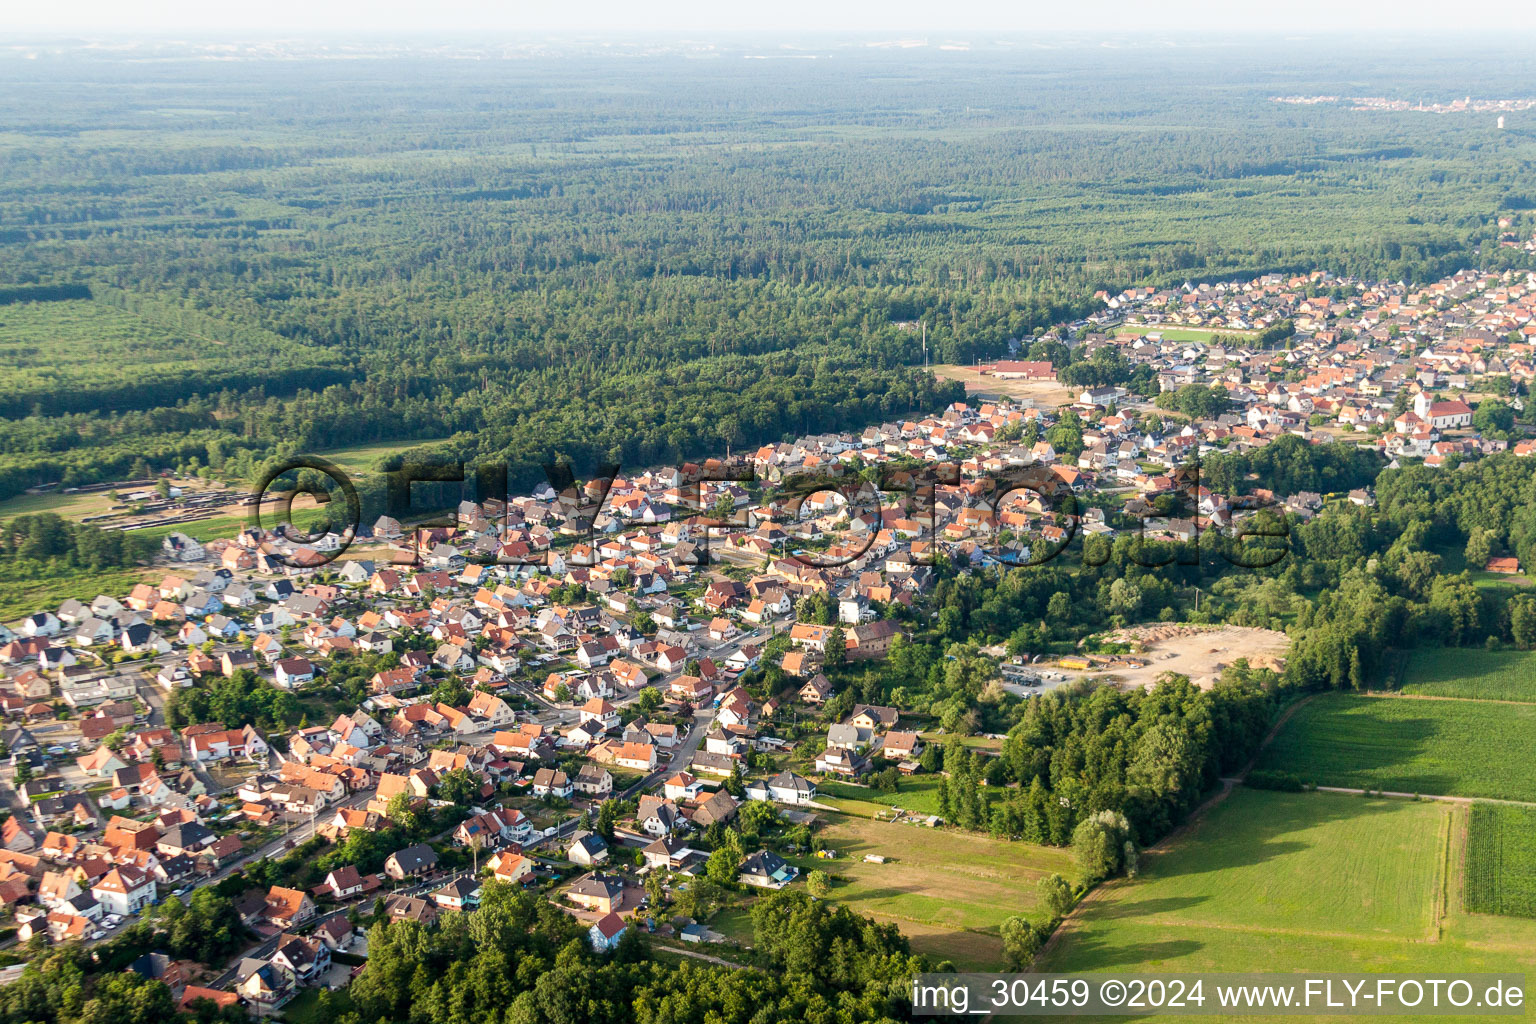 Luftbild von Dorf - Ansicht in Schirrhein in Grand Est im Bundesland Bas-Rhin, Frankreich